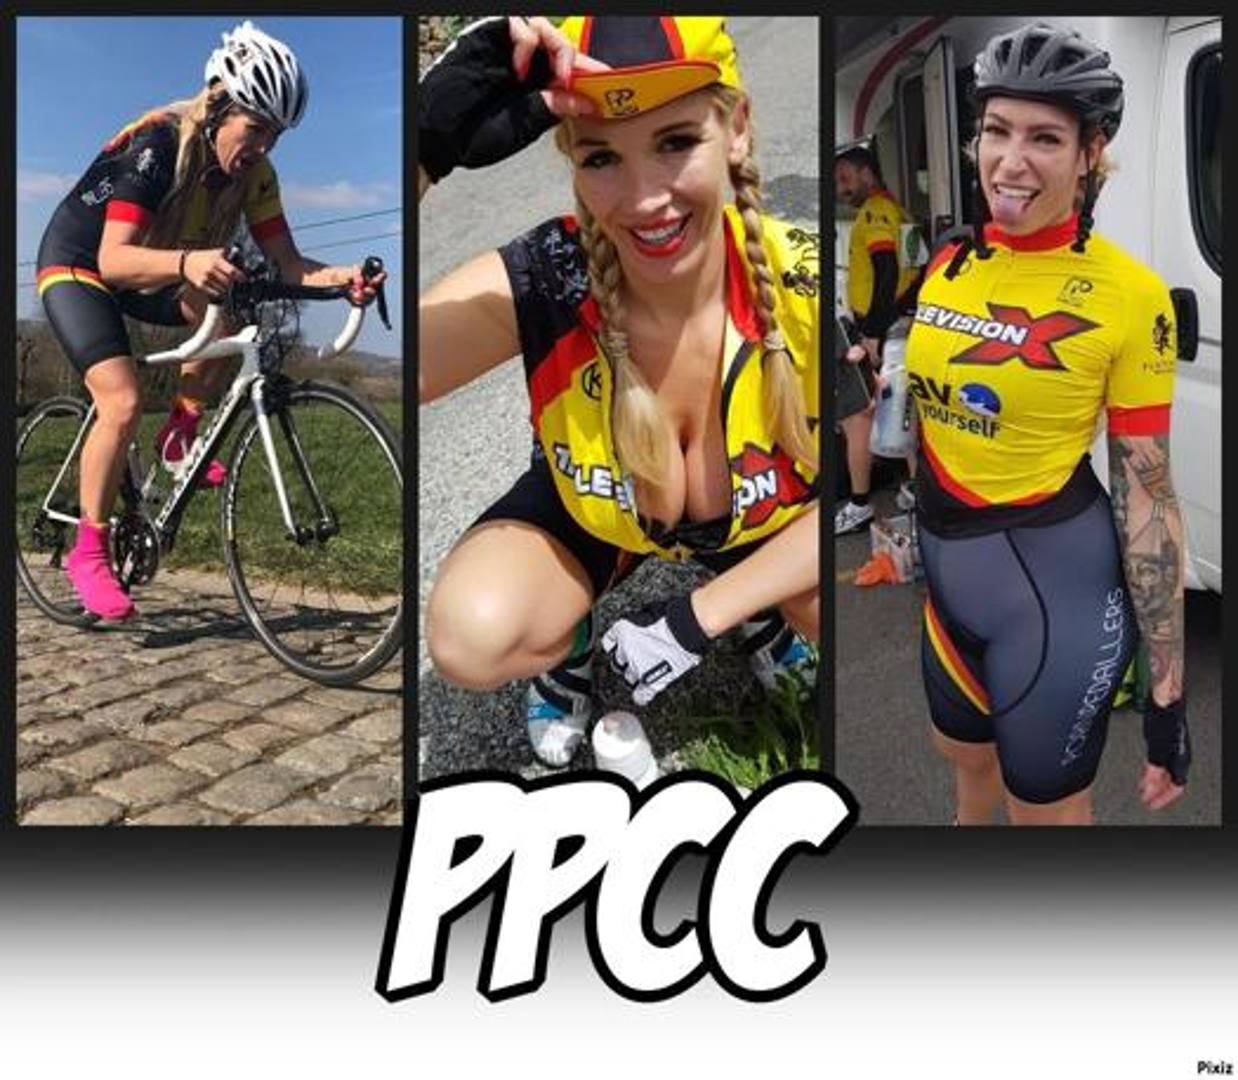 La Ppc, Porn pedaliers cycling club, è un team di ciclismo composto da lavoratori del mondo del porno 